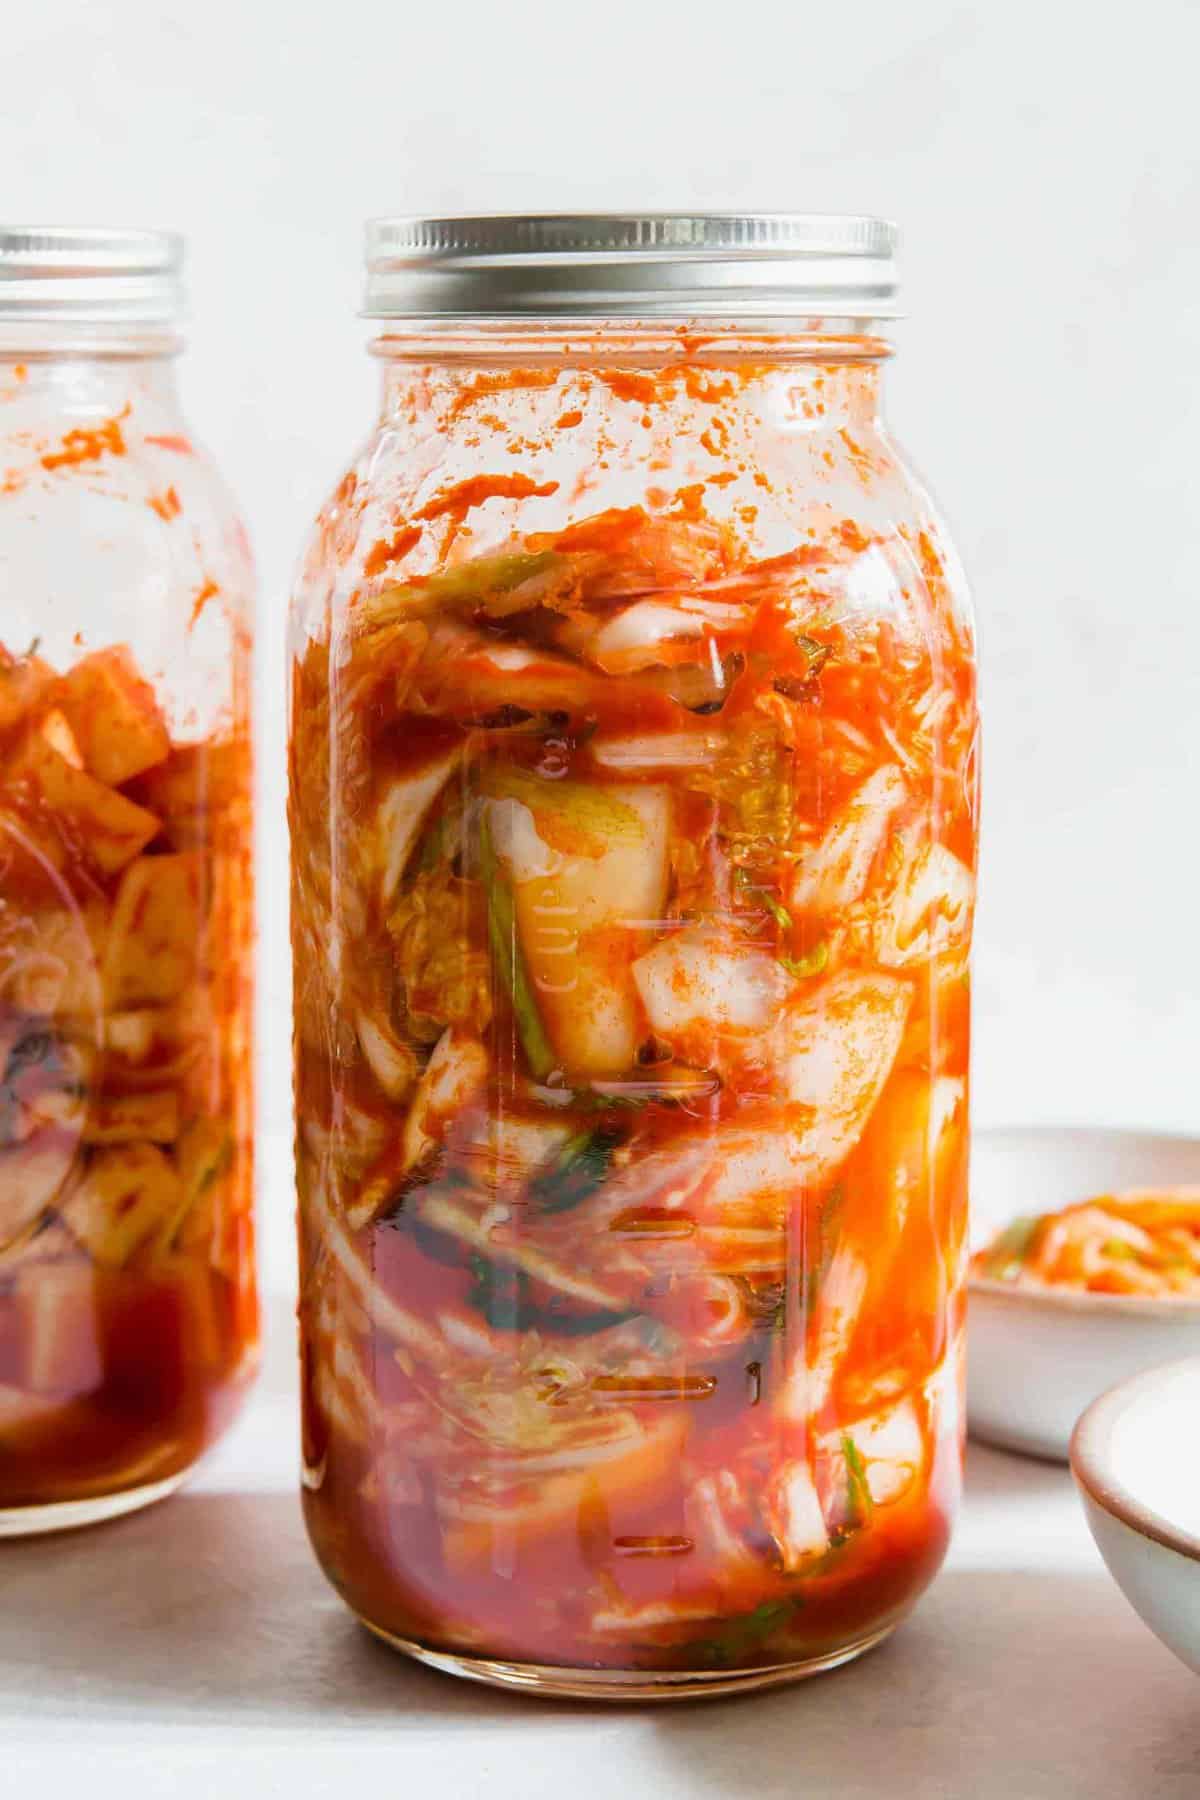 How To Make Homemade Kimchi Kimchee Making Kimchi At Home,Fettucini Vs Linguini